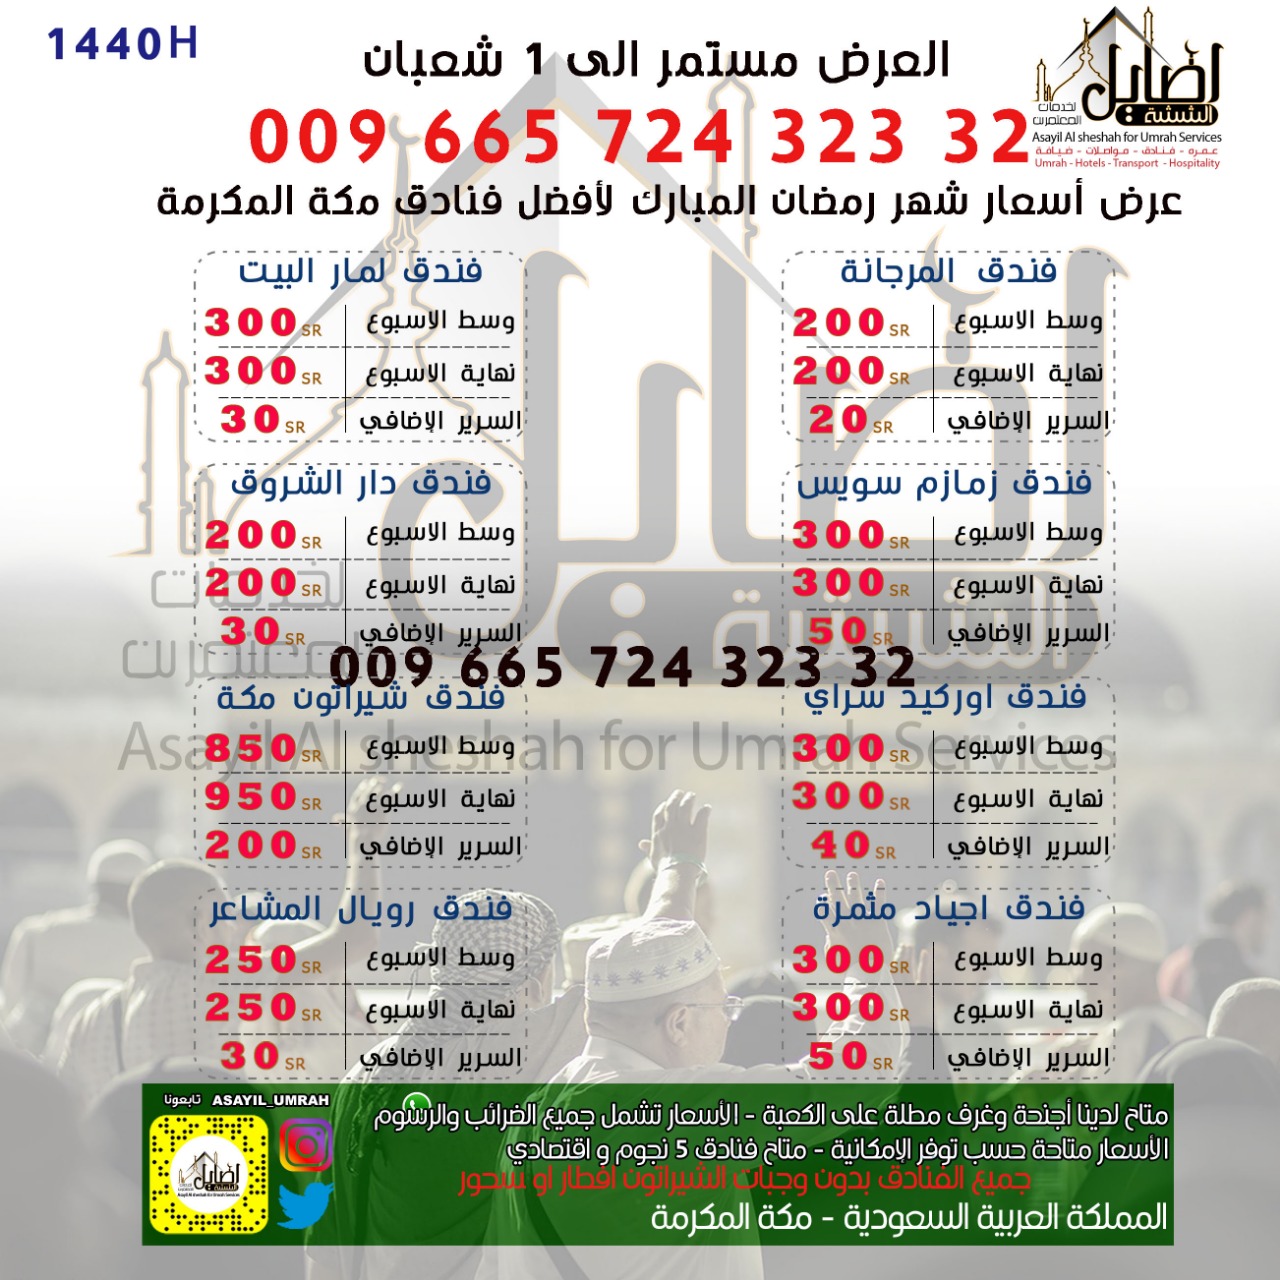 عروض فنادق مكة لشهر رمضان ١٤٤٠ من اصايل الششه 00966572432332 حجز عمرة عبر الانترنت P_1136tovgx0